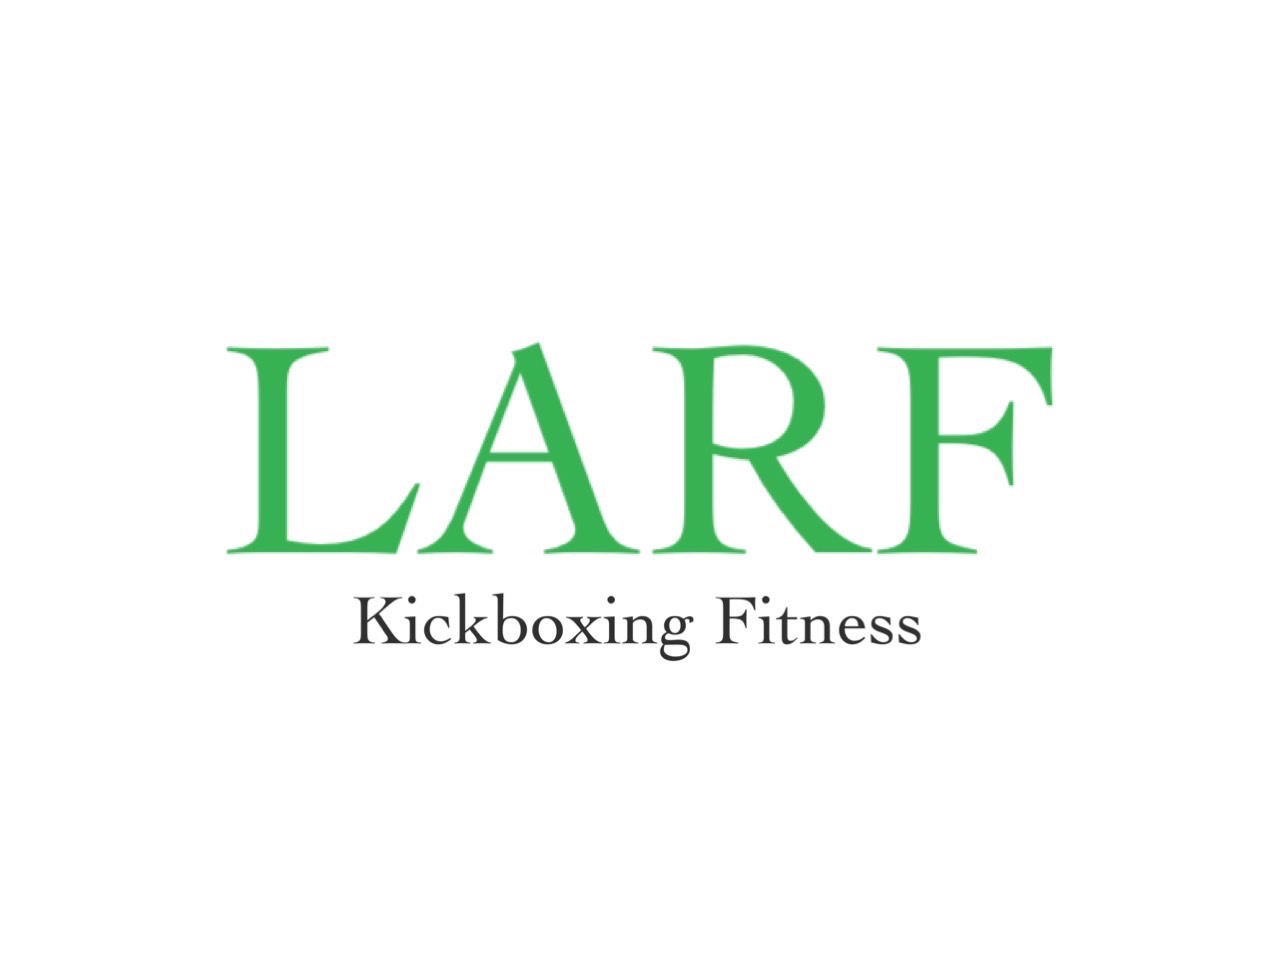 LARF Kickboxing Fitness